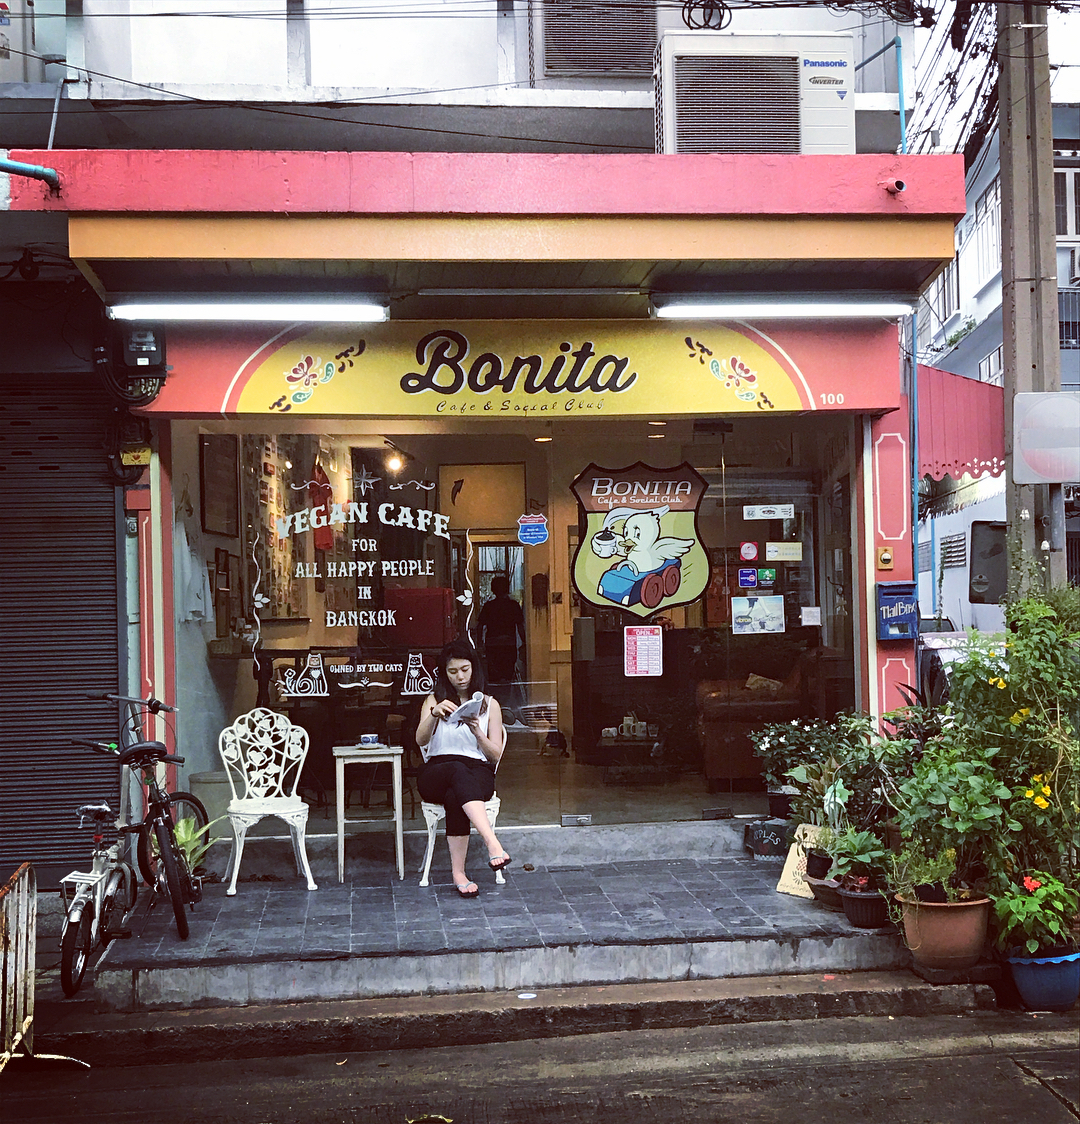 Bonita Cafe & Social Club được trang trí theo phong cách duyên dáng, cổ điển và truyền thống